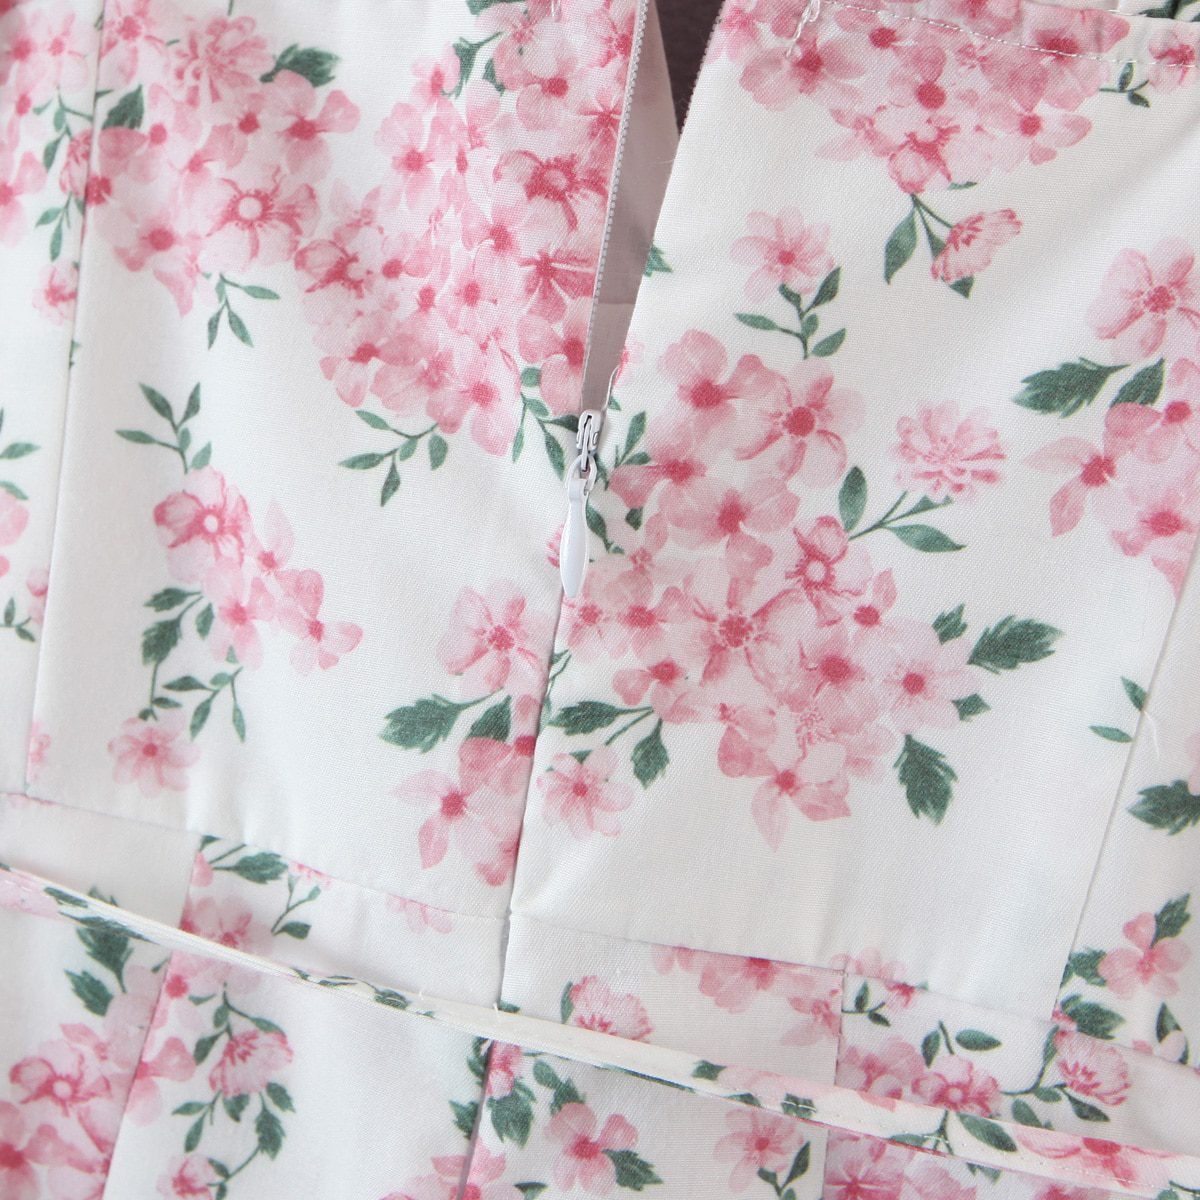 Slit V Neck White Pink Floral Print Short Pants Jumpsuit in Jumpsuits & Rompers